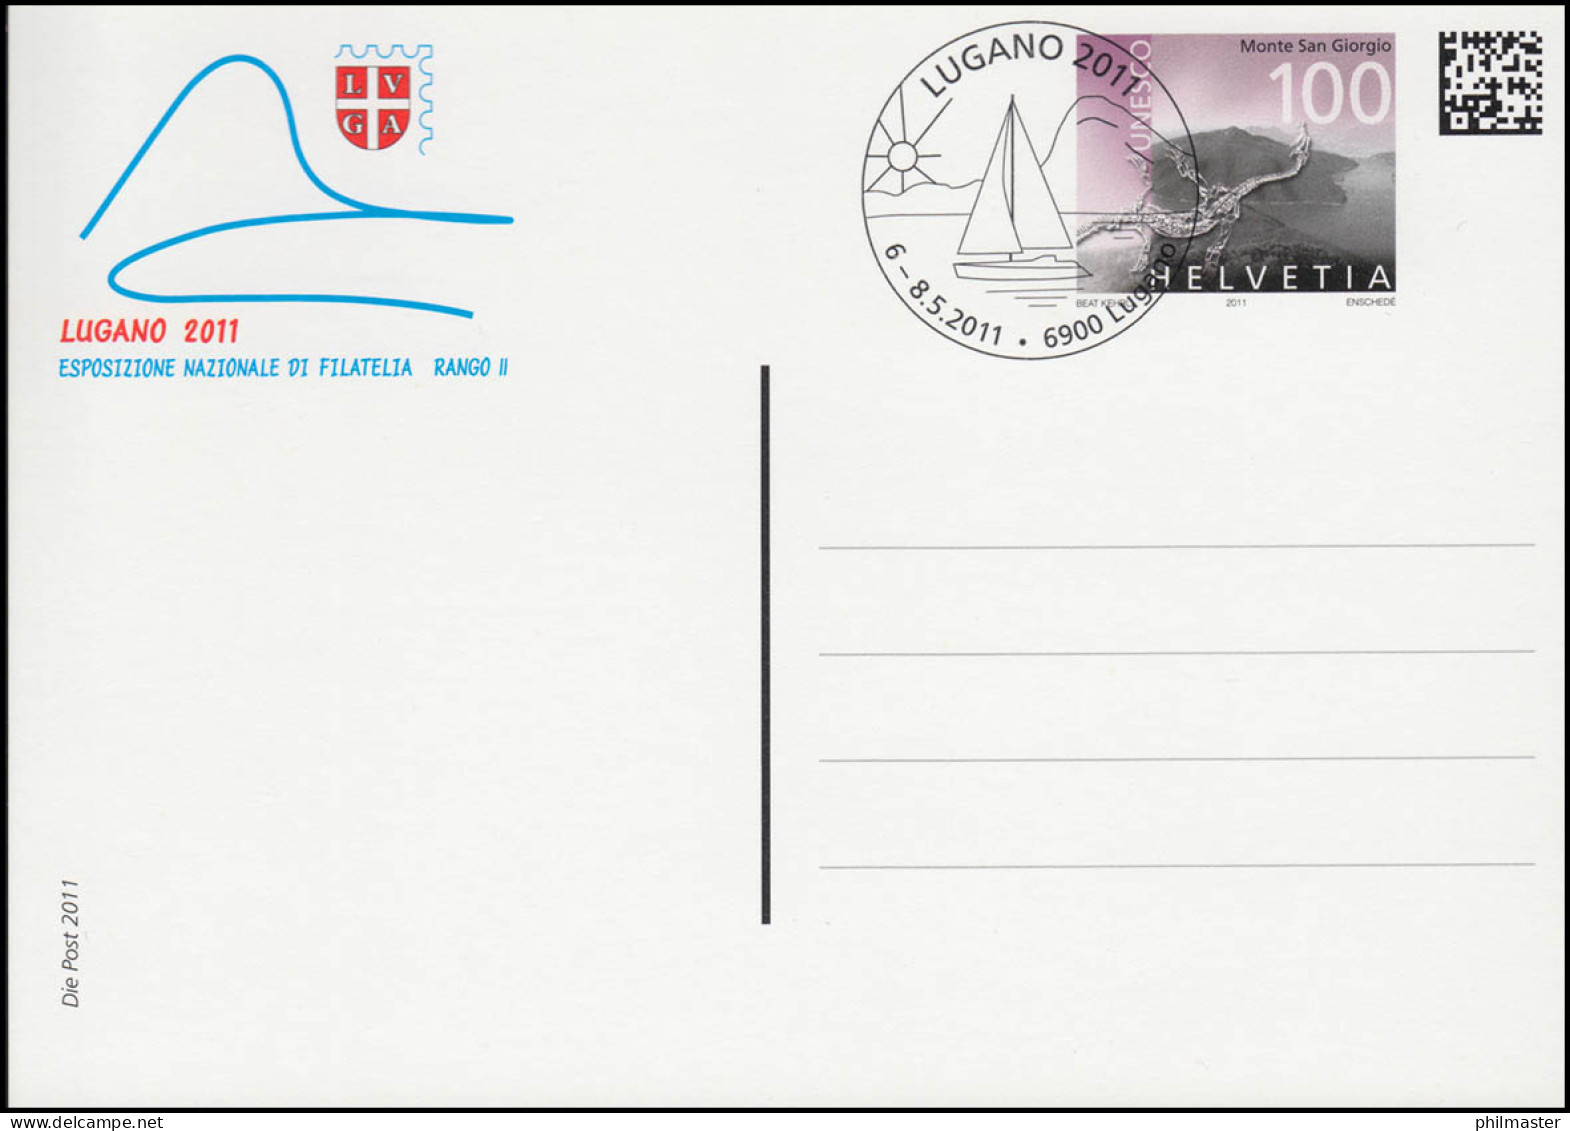 Schweiz Postkarte P 342 Briefmarkenausstellung LUGANO 2011, ESSt LUGANO - Stamped Stationery